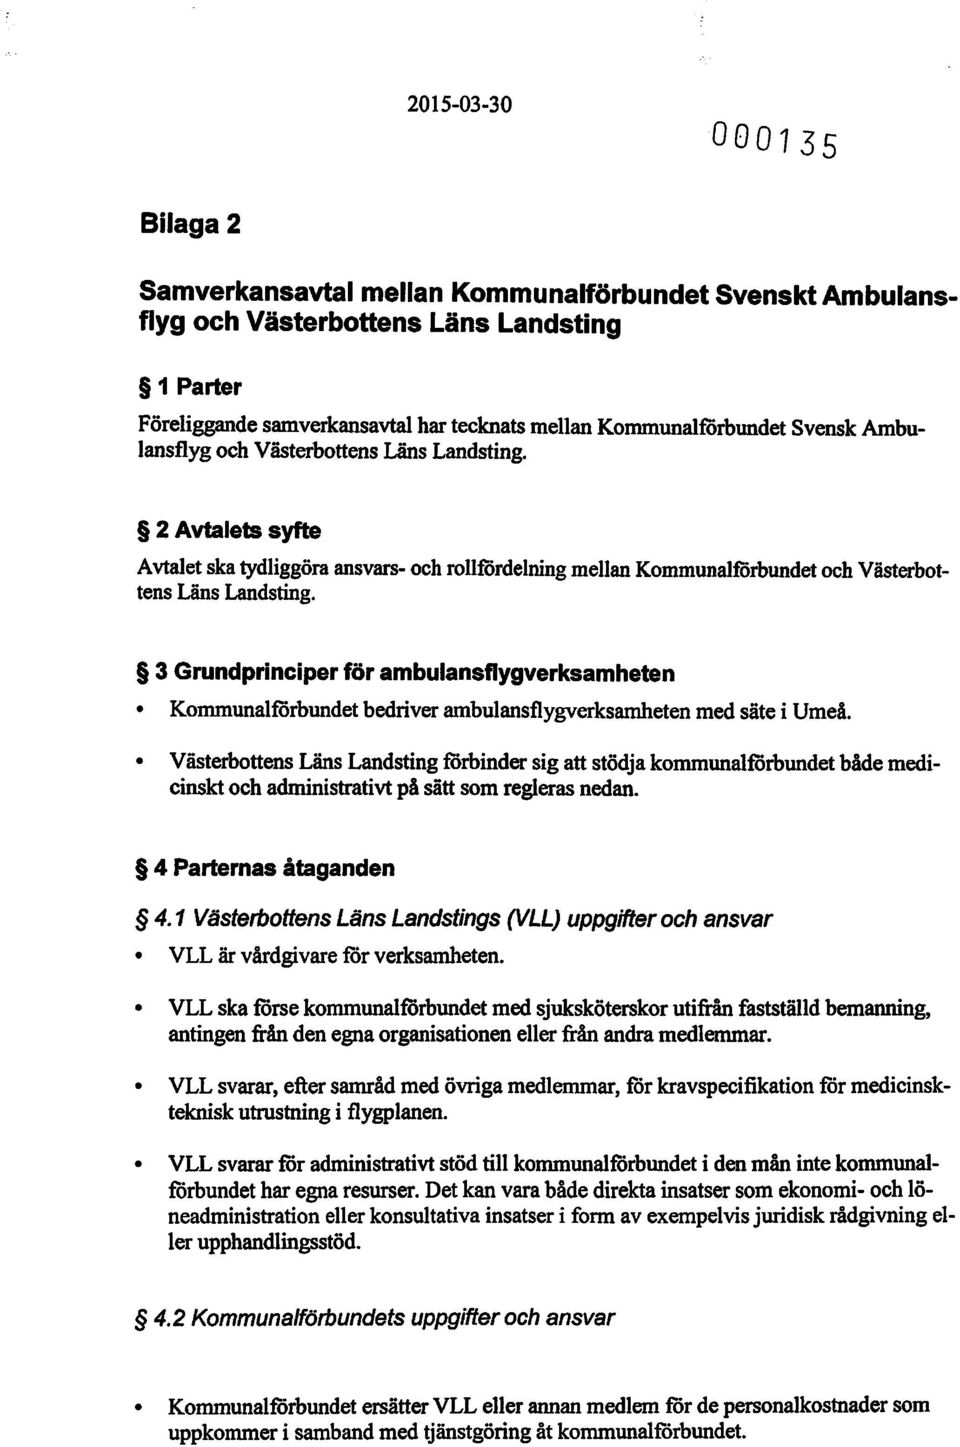 3 Grundprinciper för ambulansflygverksamheten Kommunalförbundet bedriver ambulansflygverksamheten med säte i Umeå.